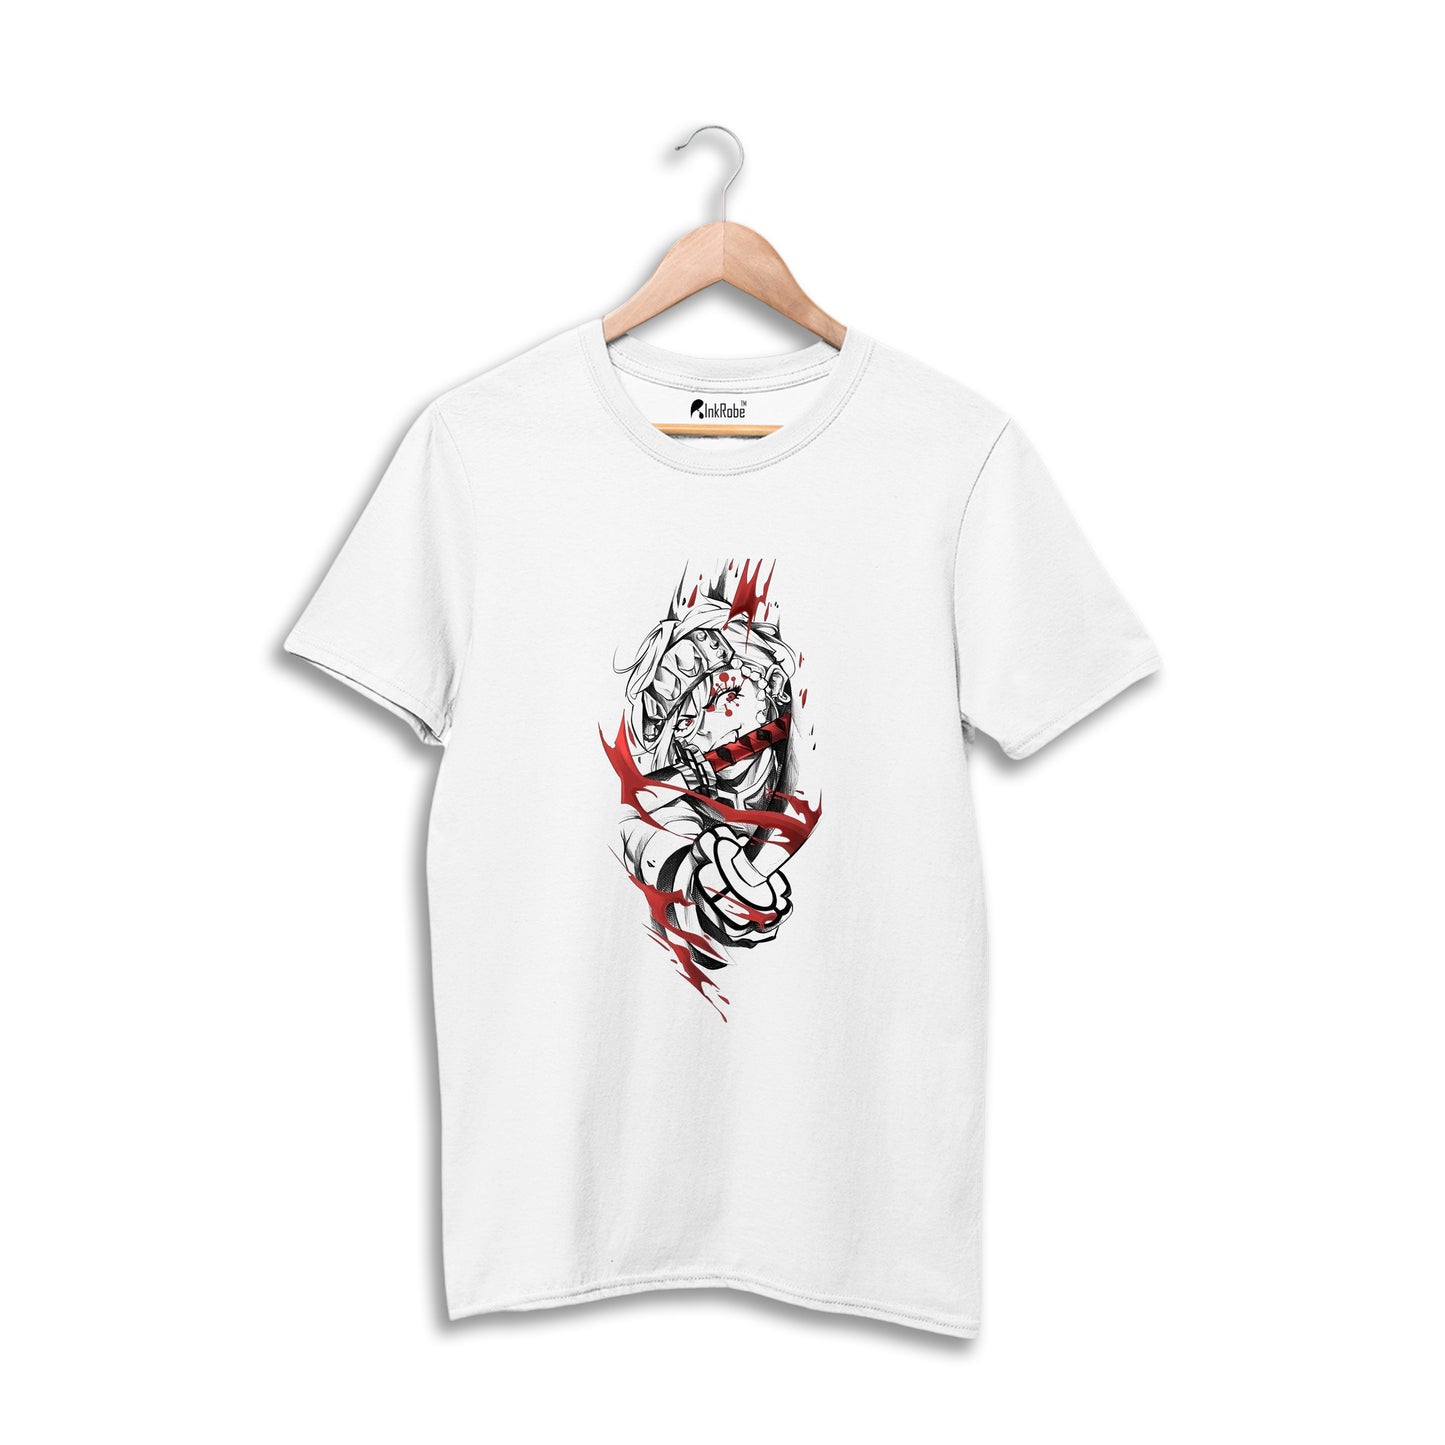 Tengen Uzui - Anime T-Shirt